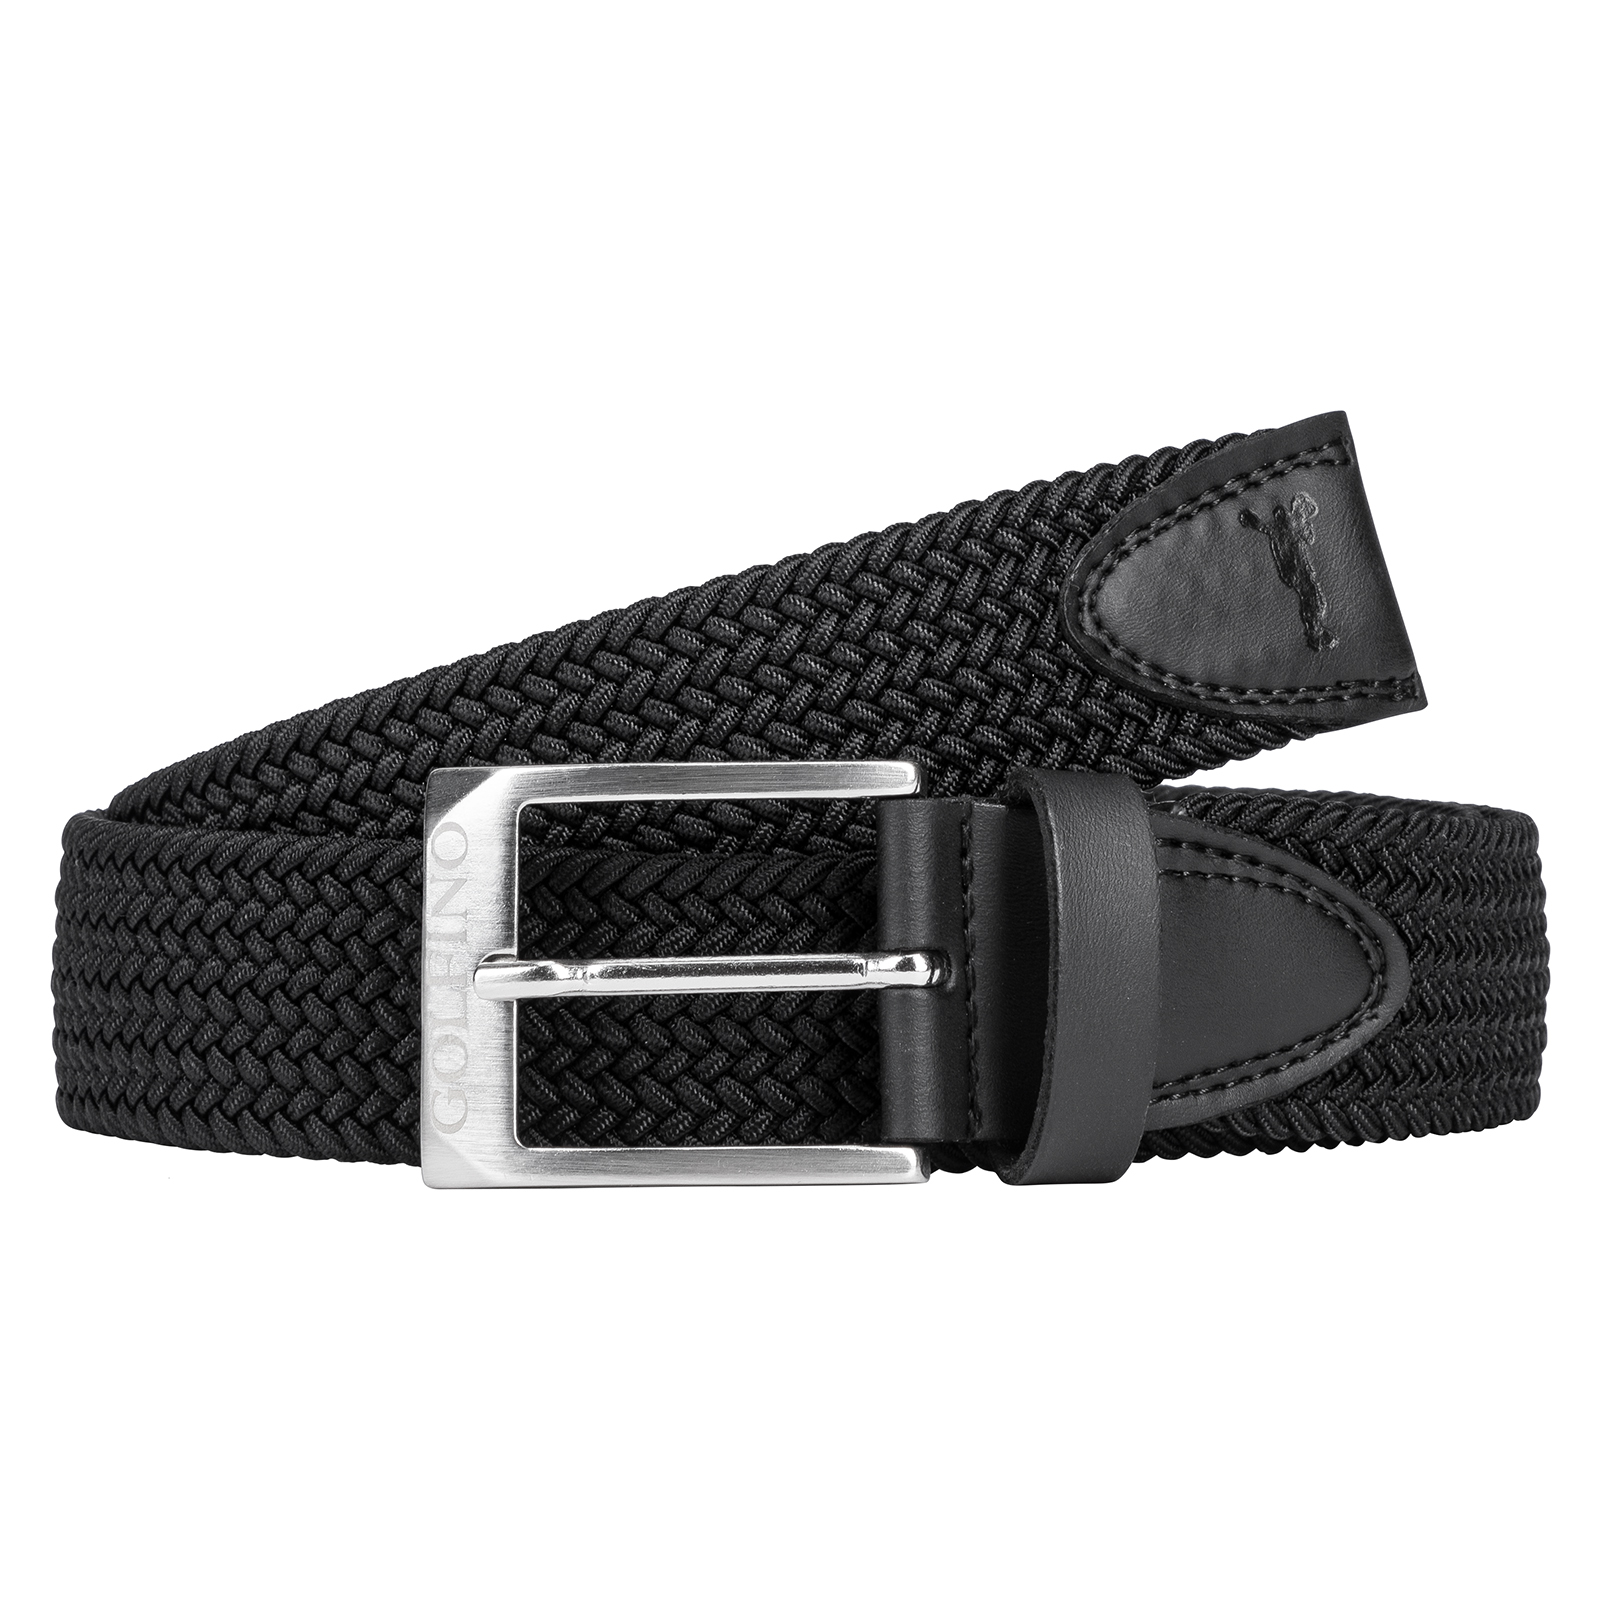 Stylish men's braided stretch belt